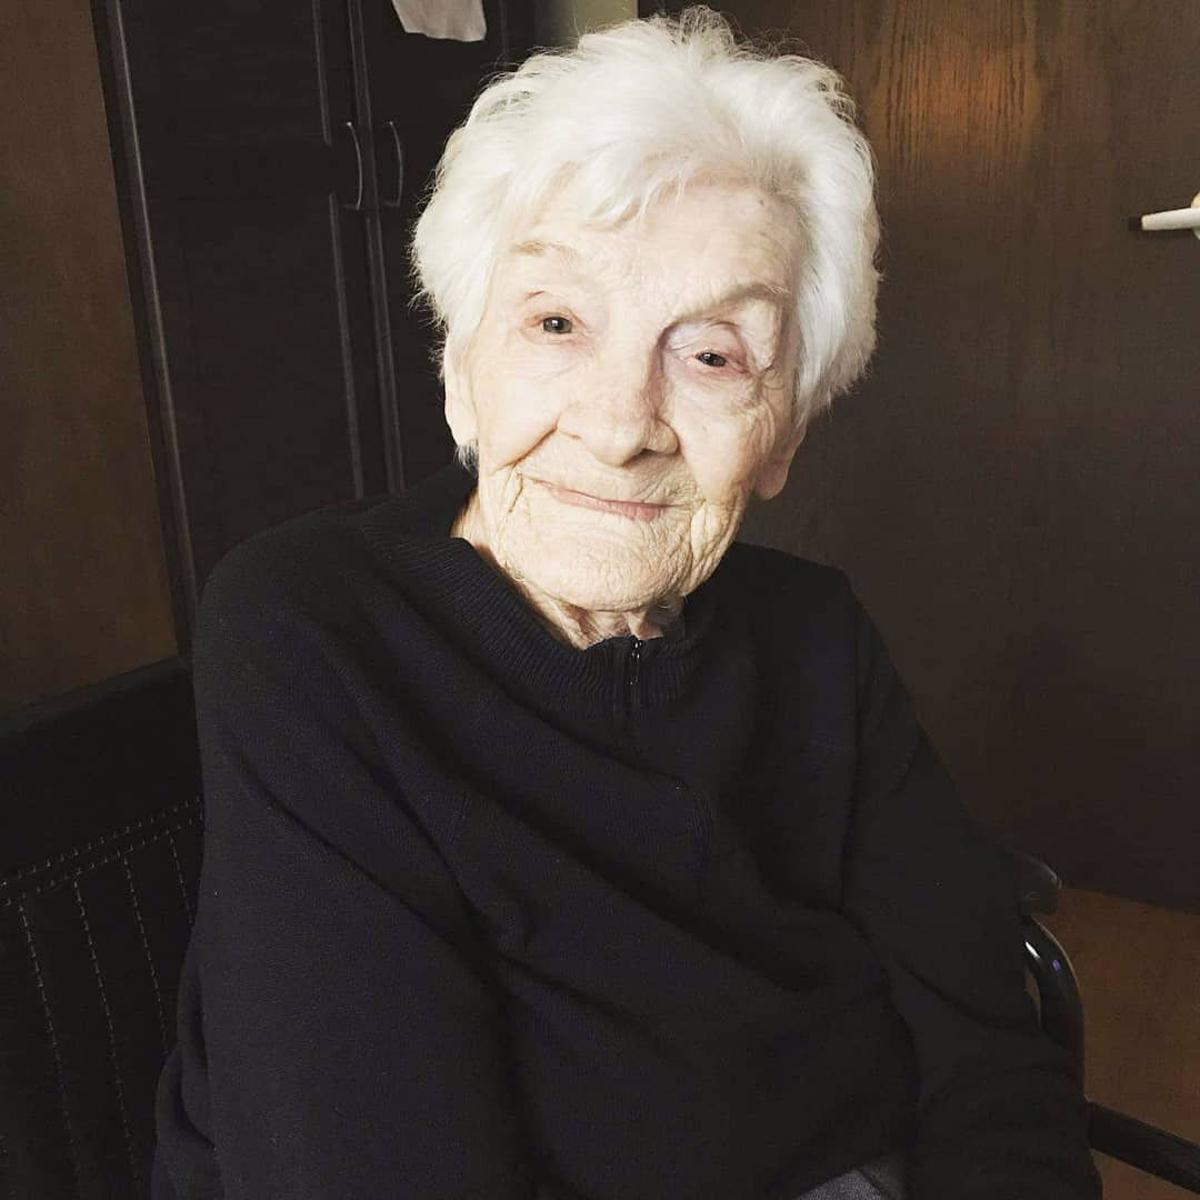 Denham Springs Resident Ellen Kathryn Powell Prine To Mark 104 Years On Oct 16 Livingston Tangipahoa Theadvocate Com